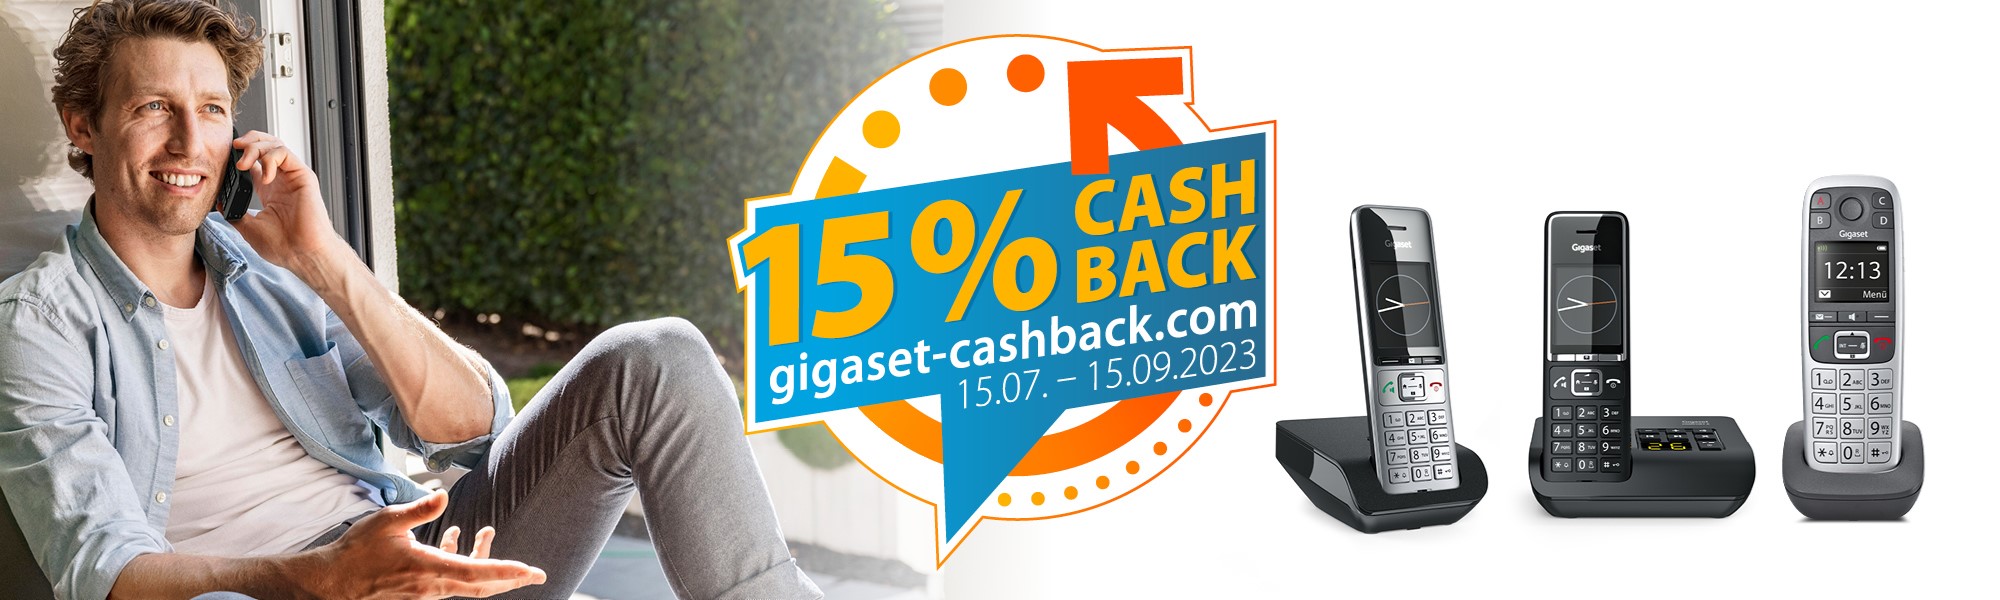 gigaset-cashback